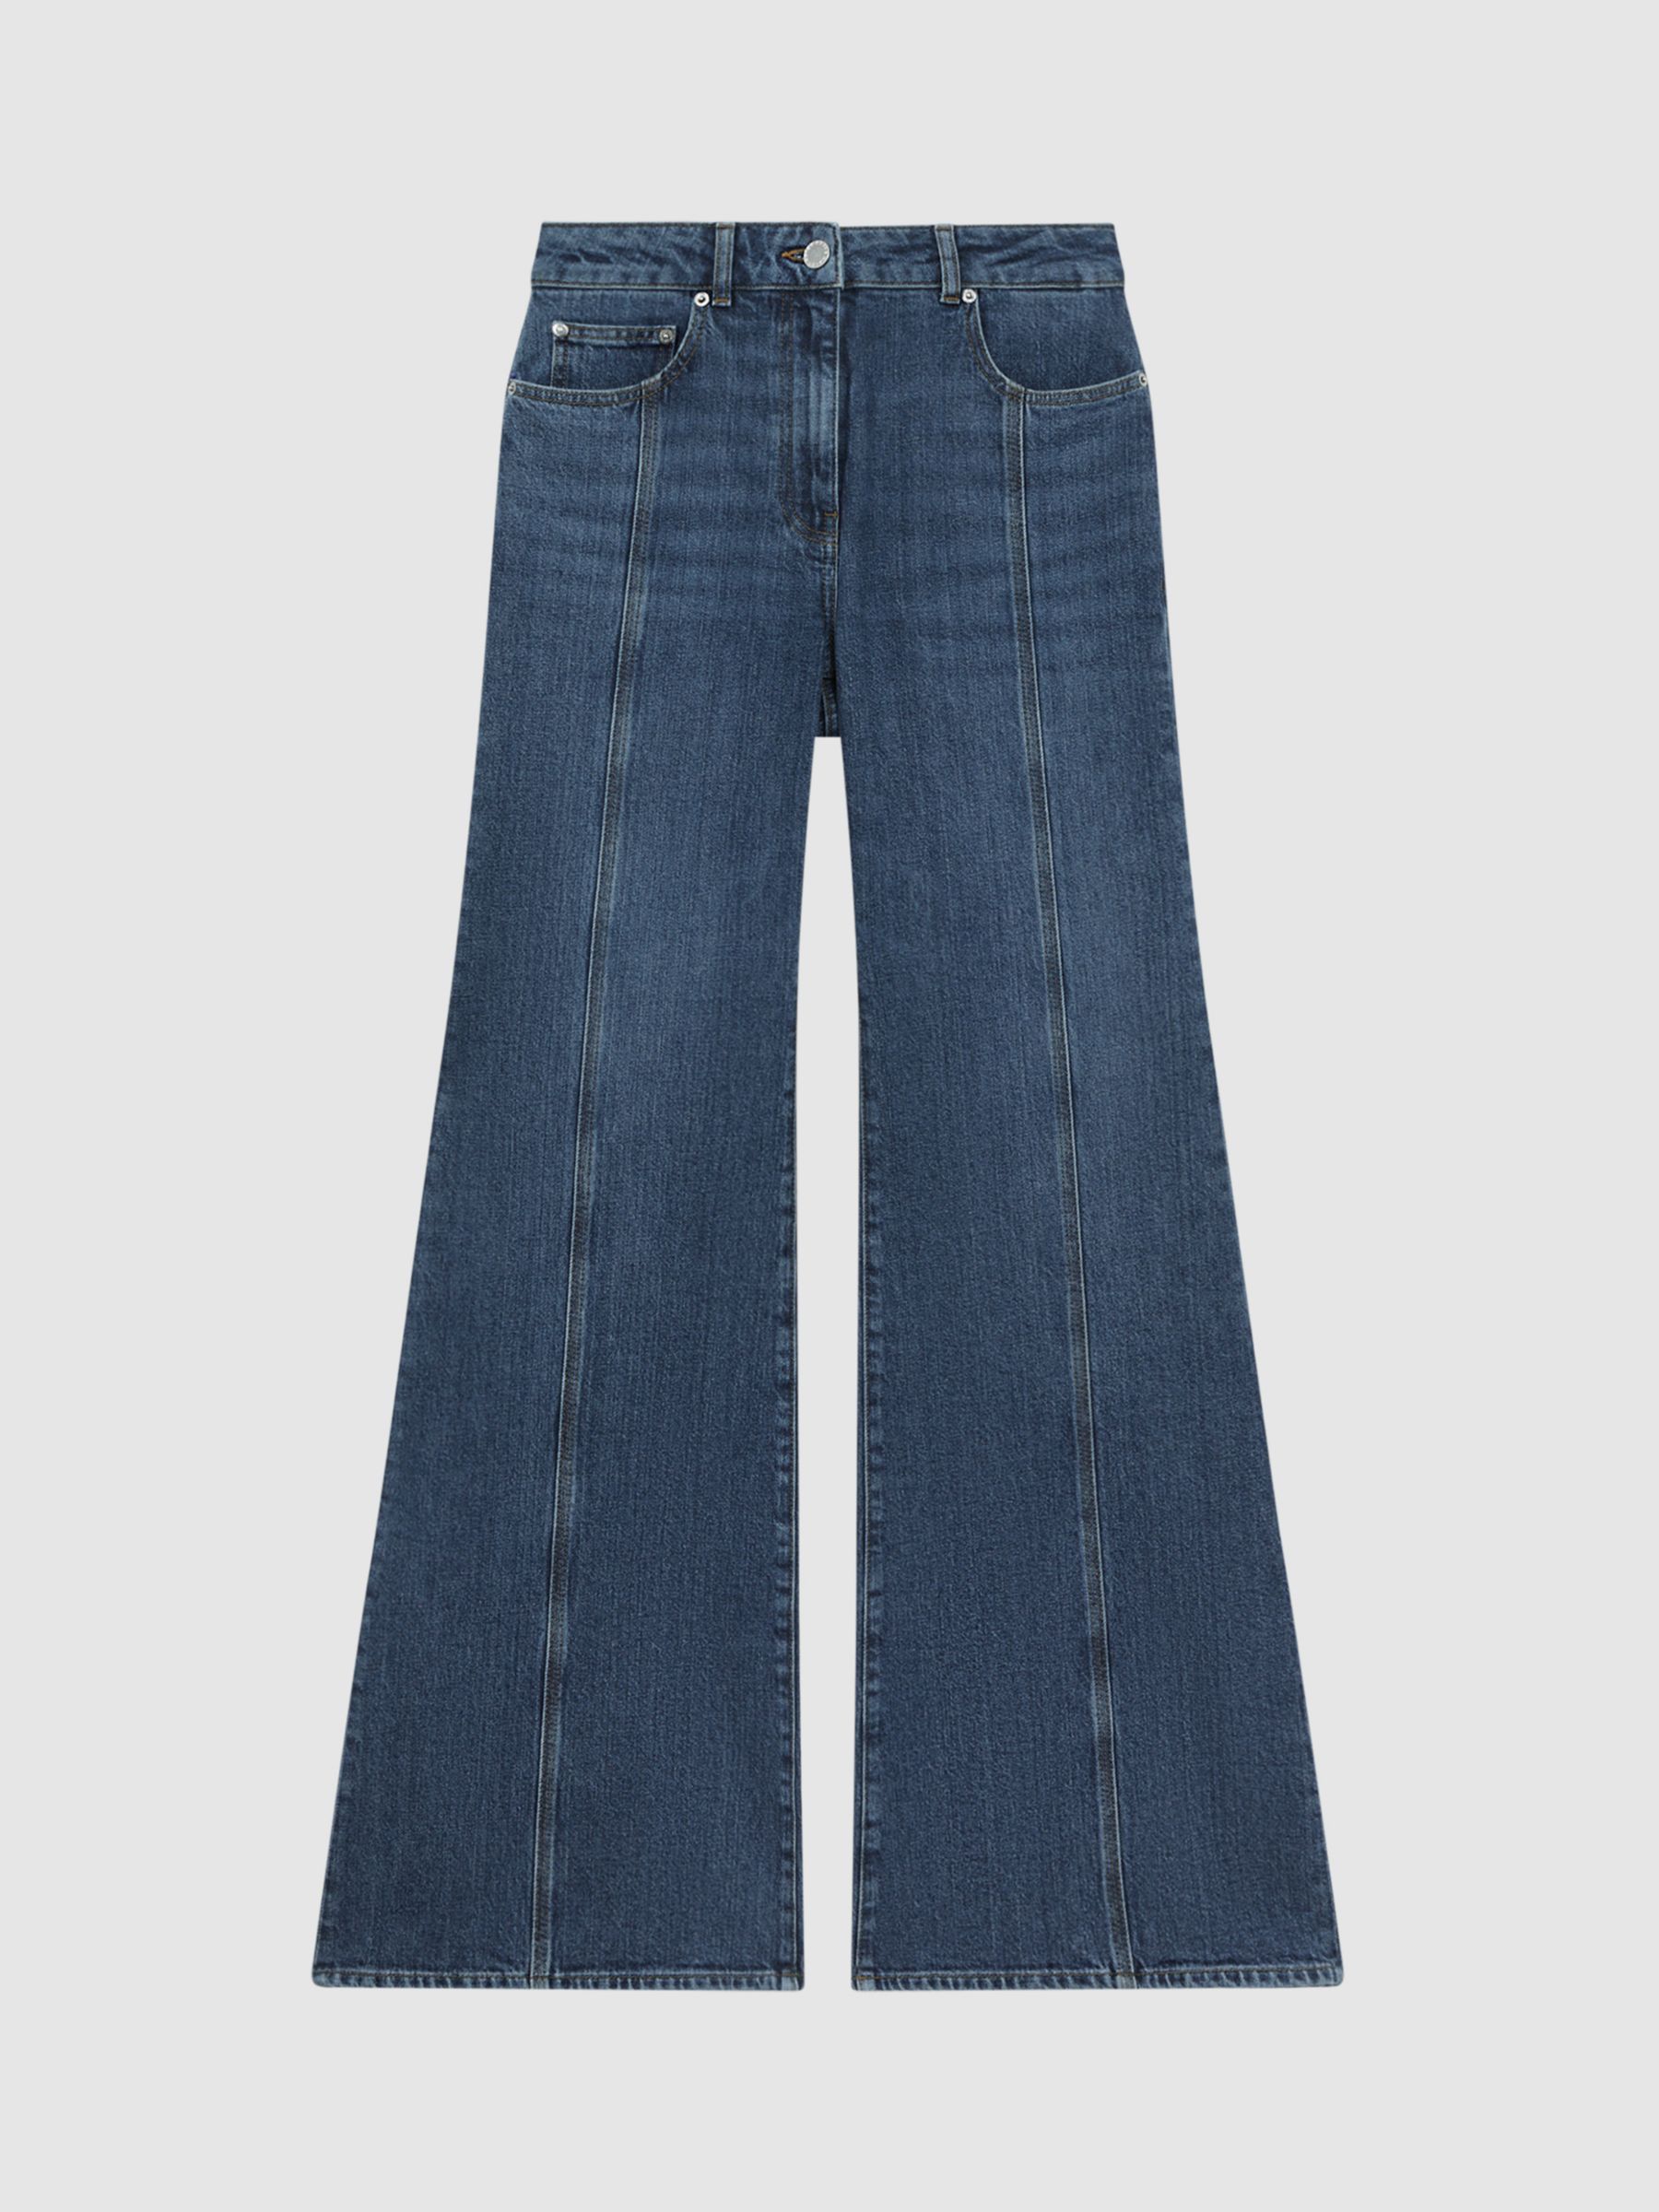 Reiss Juniper Flared Jeans, Mid Blue, 28R